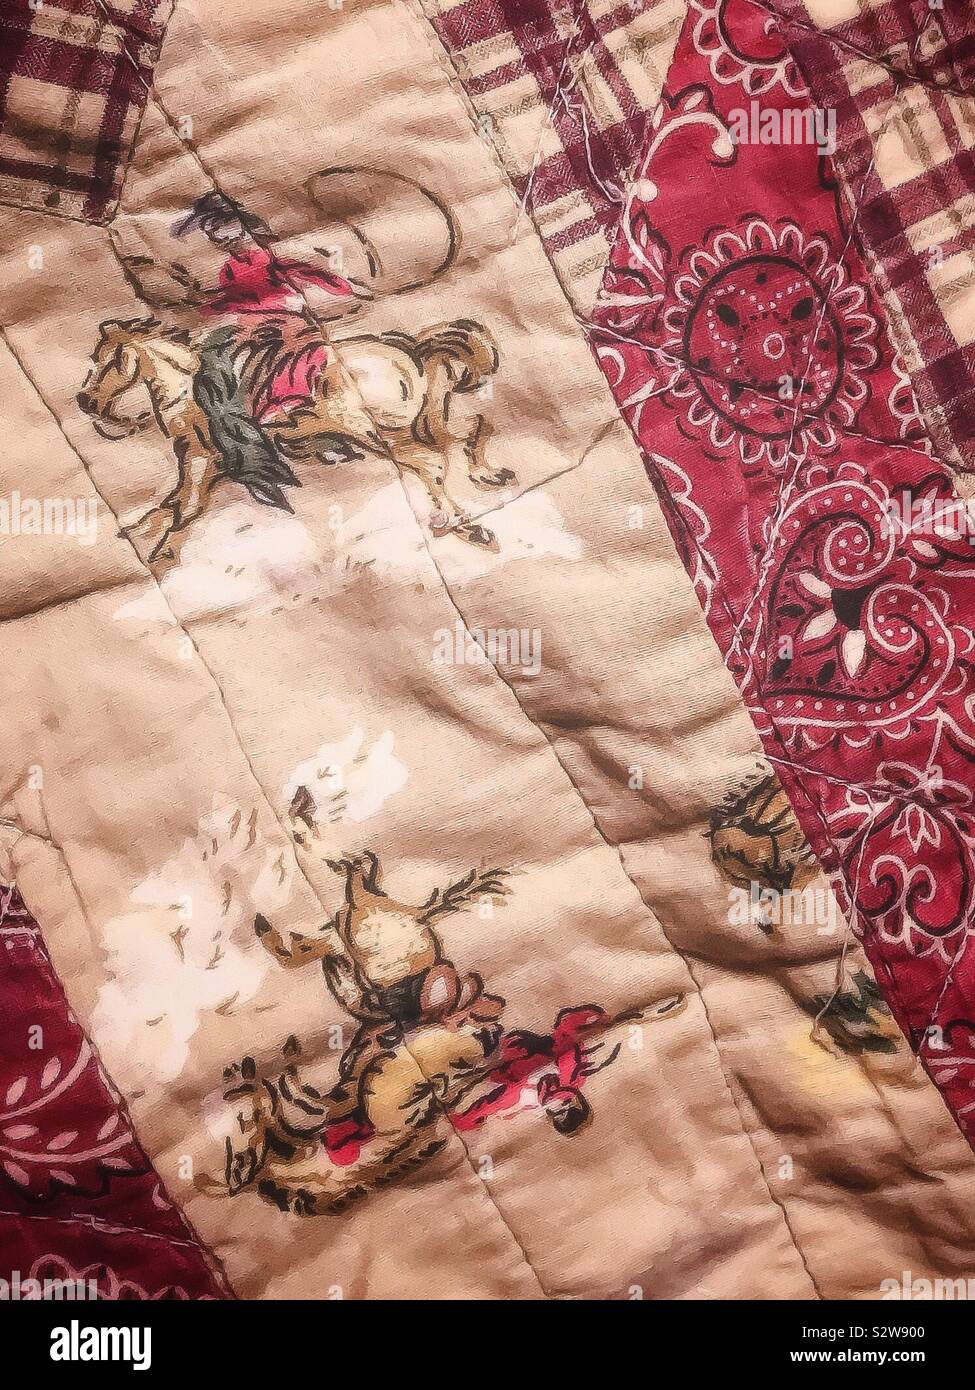 Closeup of cowboy comforter Stock Photo